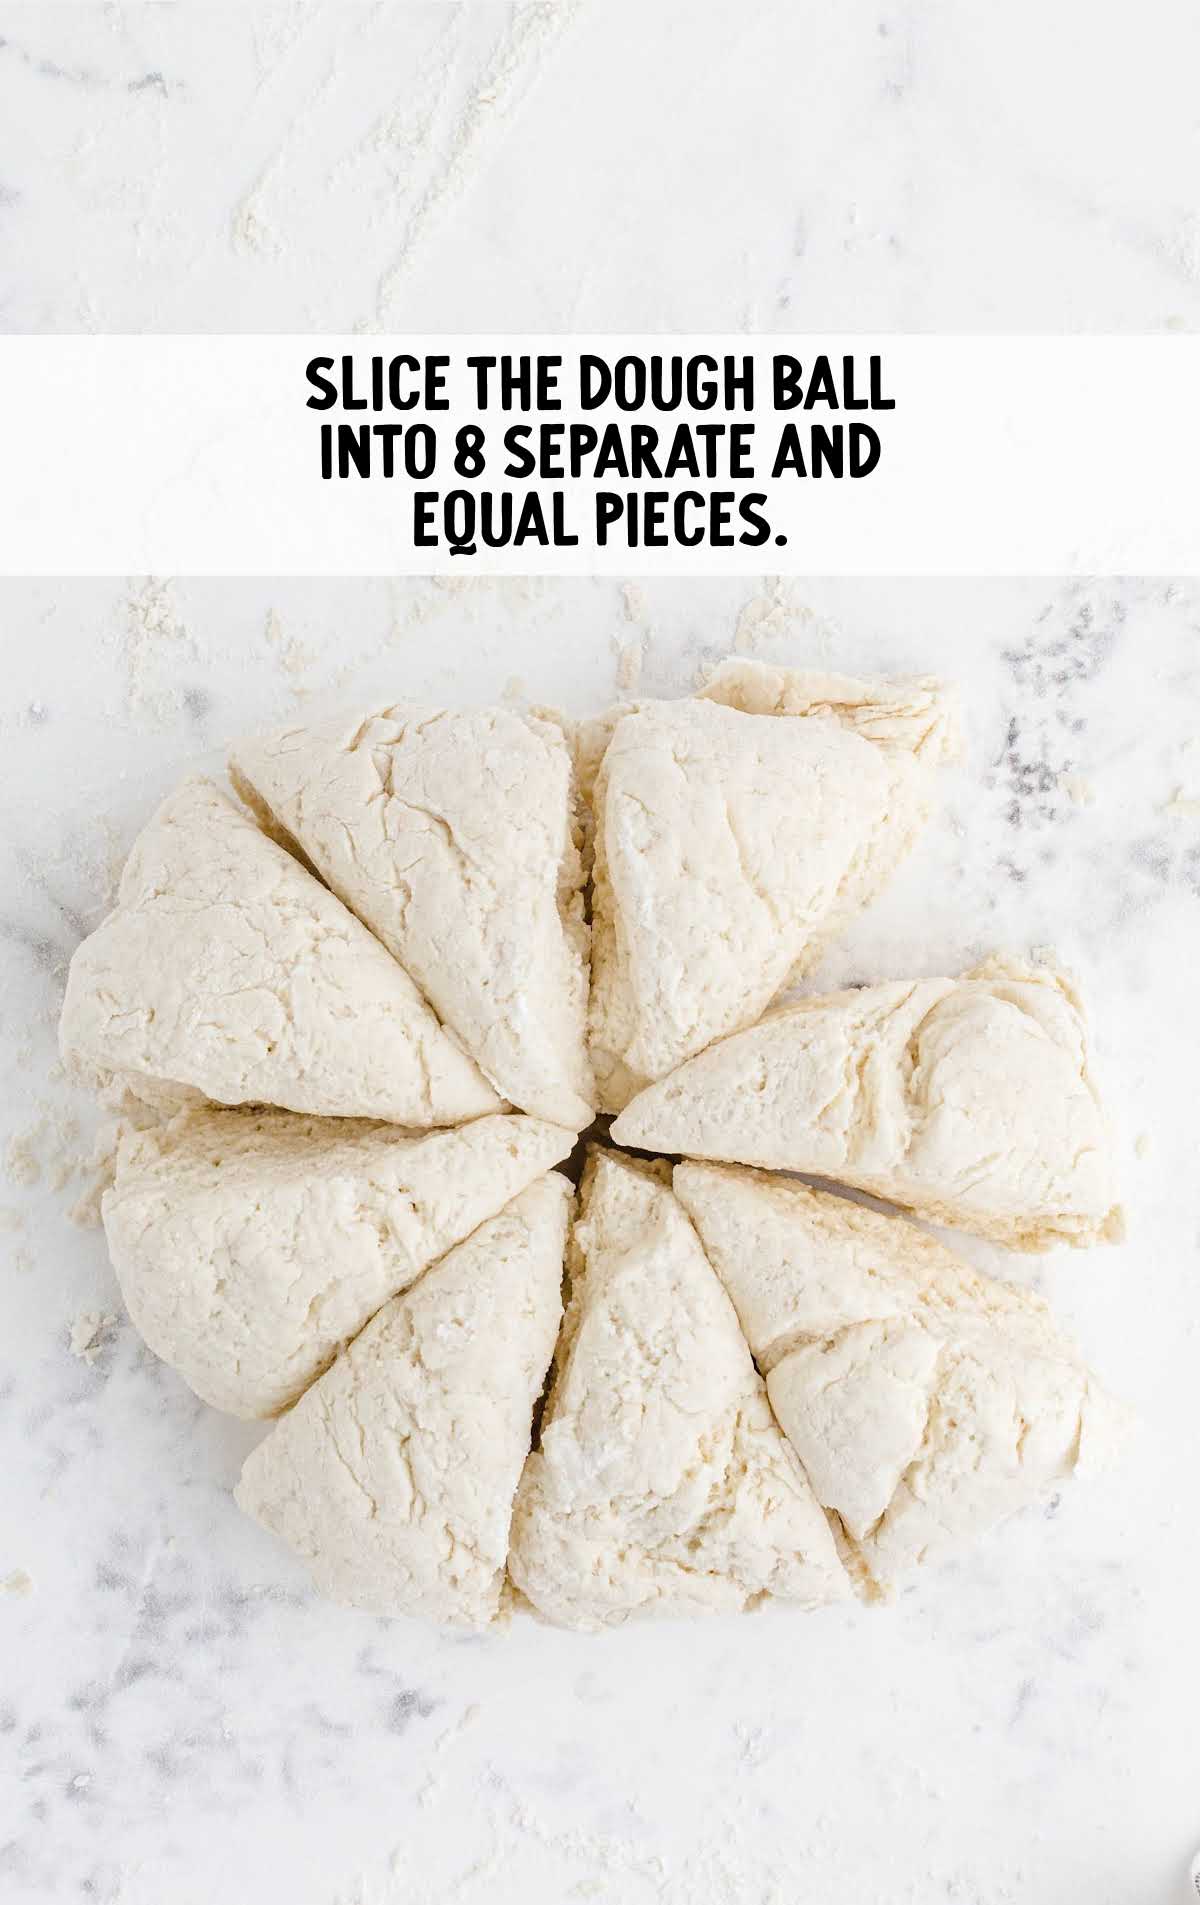 dough ball sliced into 8 slices